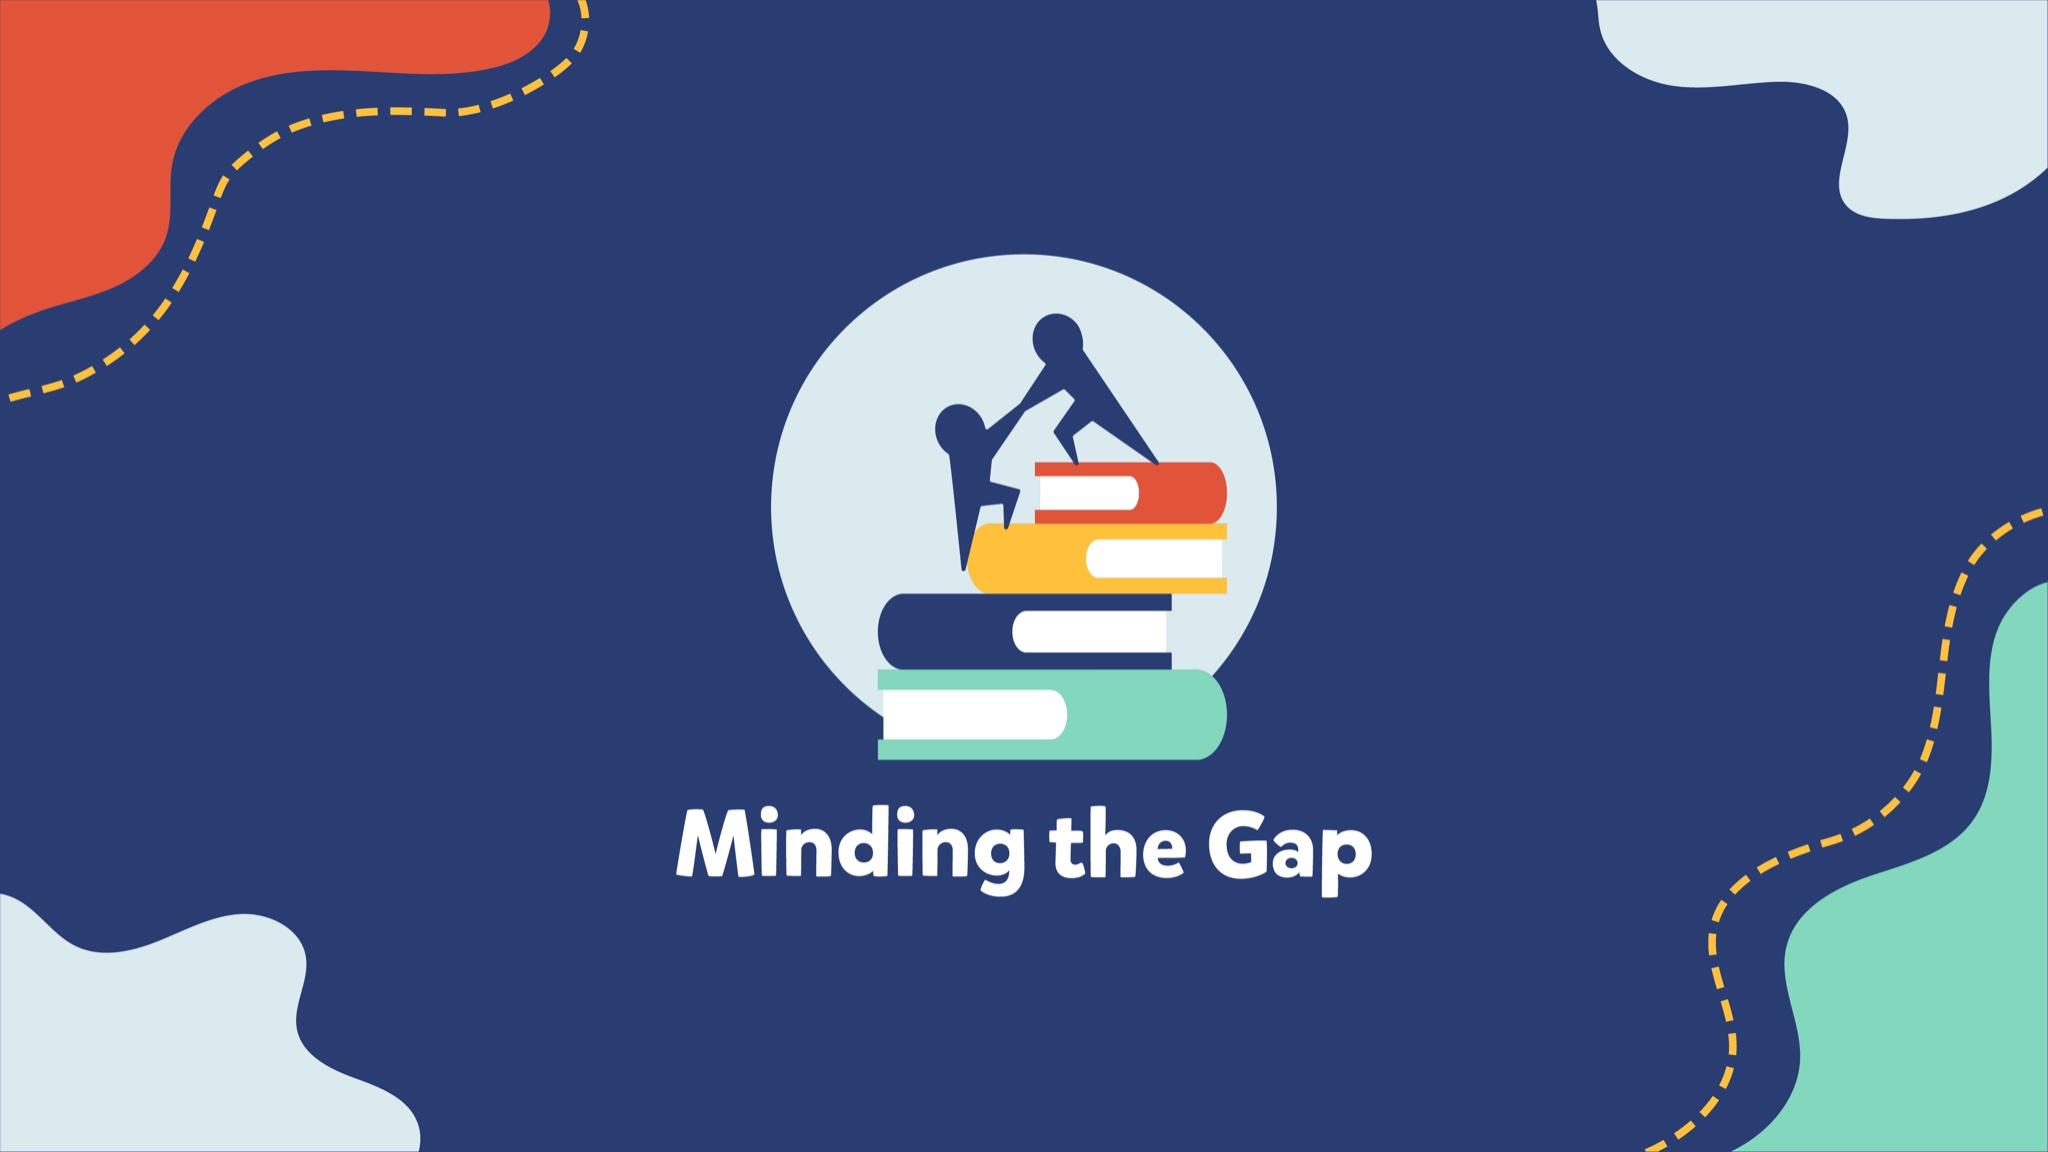 Minding the Gap Training Aug 17